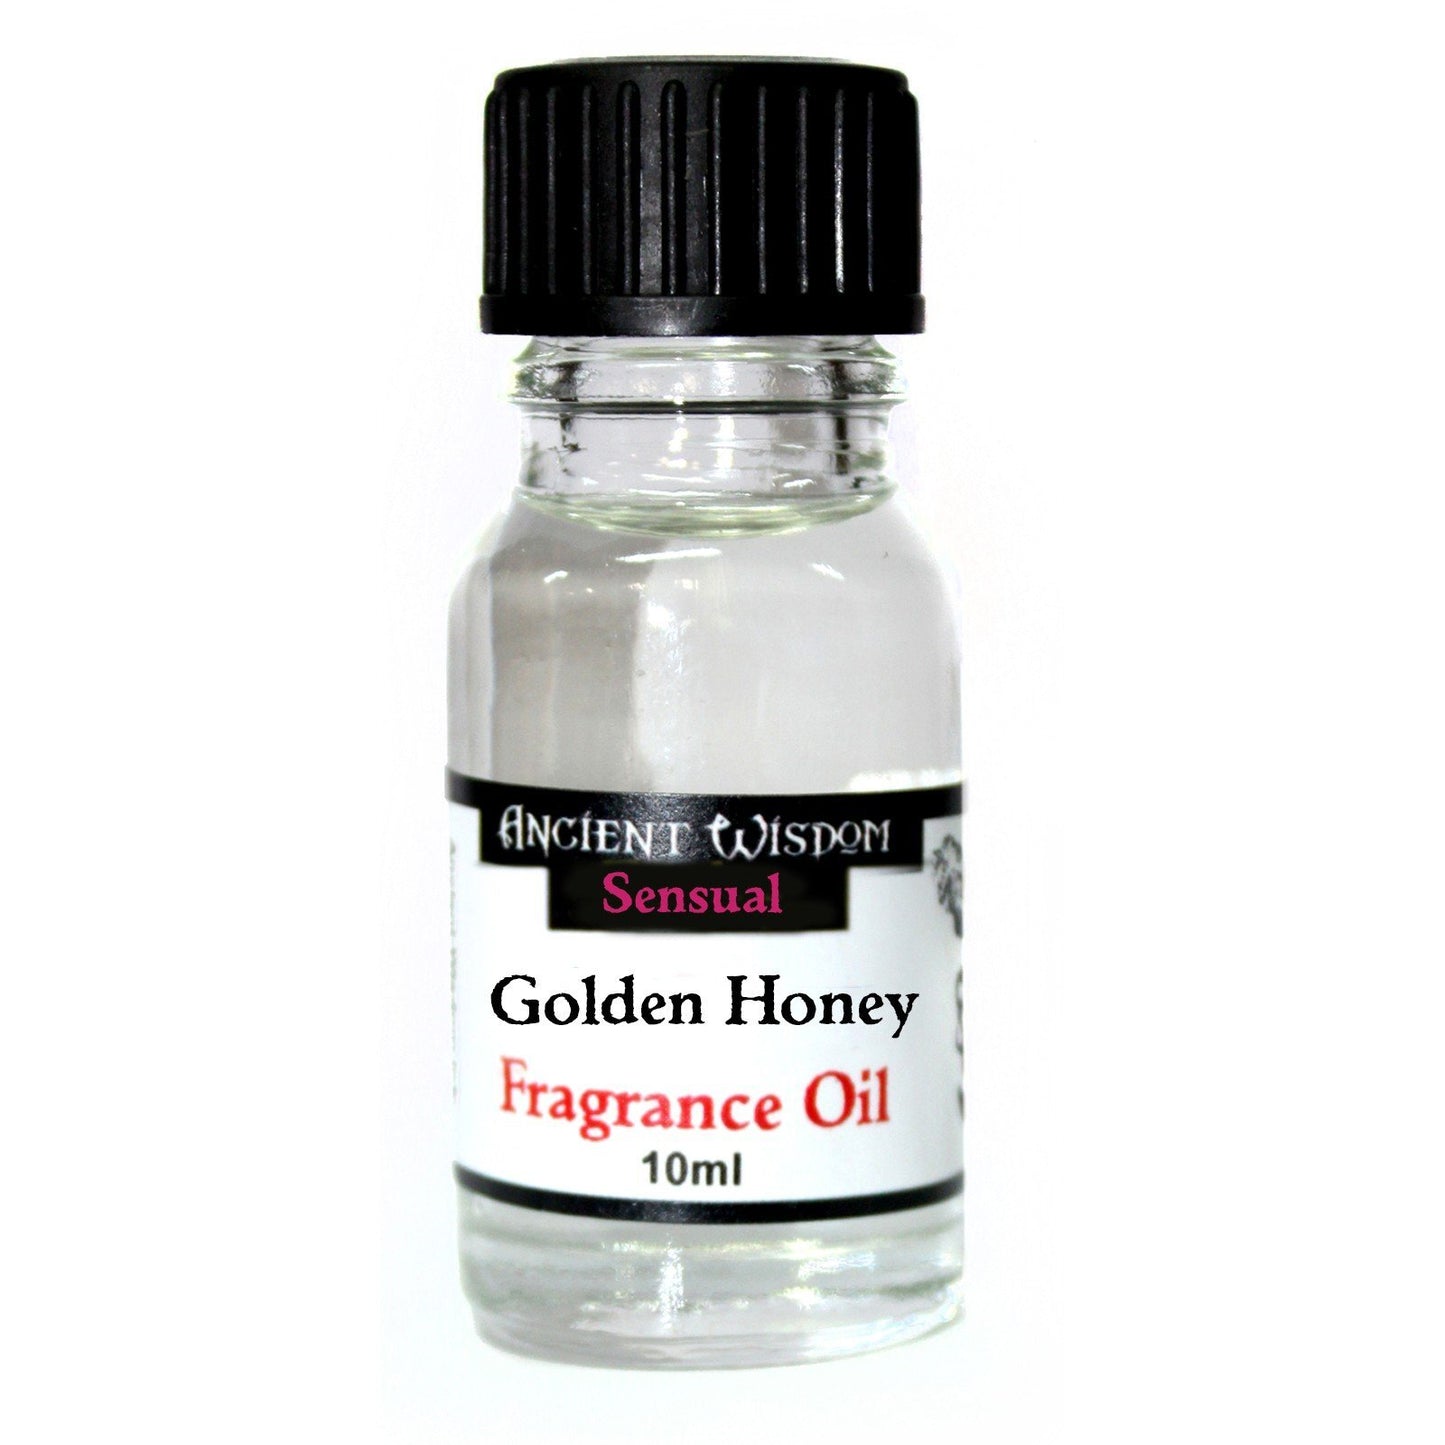 Golden Honey Fragrance Oil